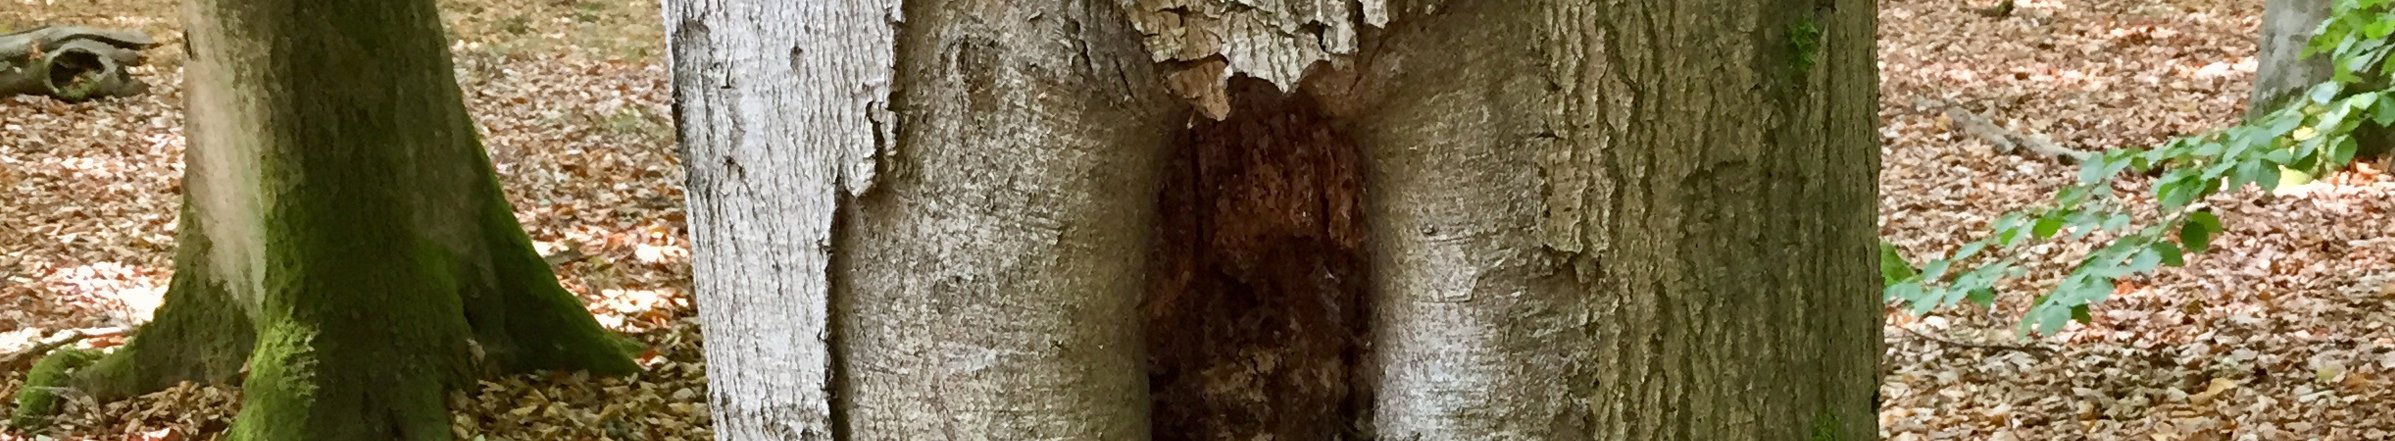 Mulmhöhle in einer Rotbuche. Höhleneingang etwa 80 cm über dem Waldboden.